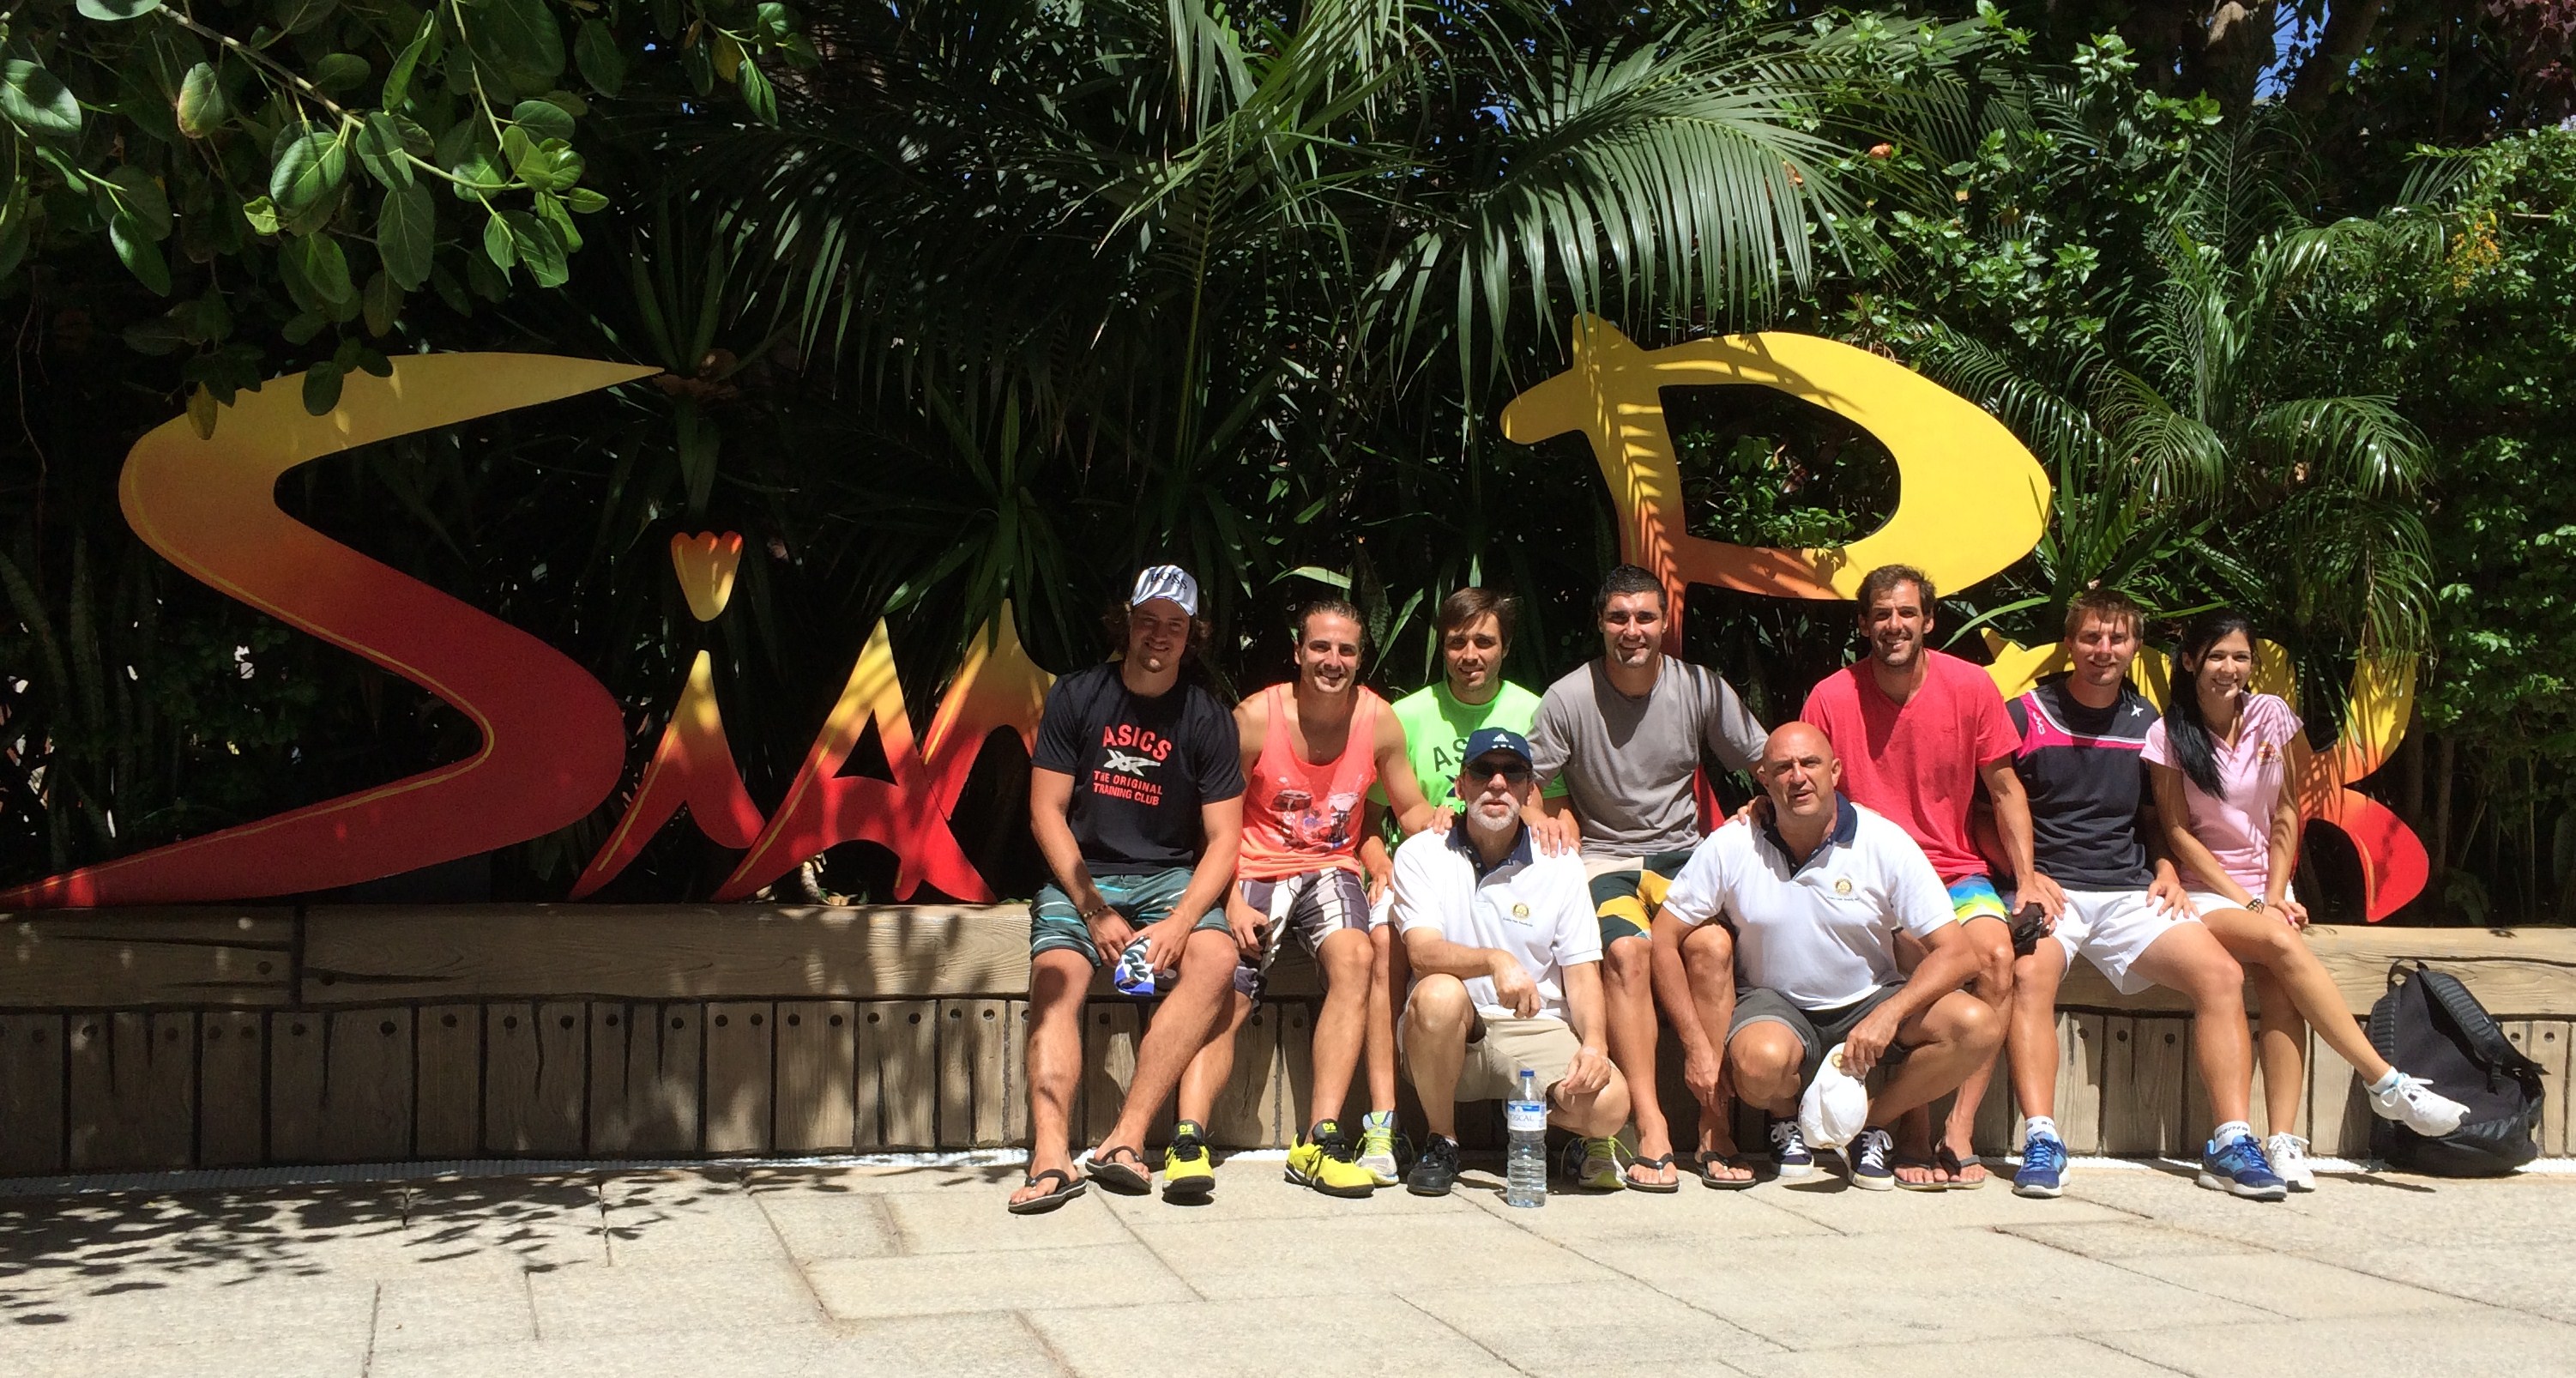 Campeones de Paddle acompañan niños necesitados en visita al Siam Park